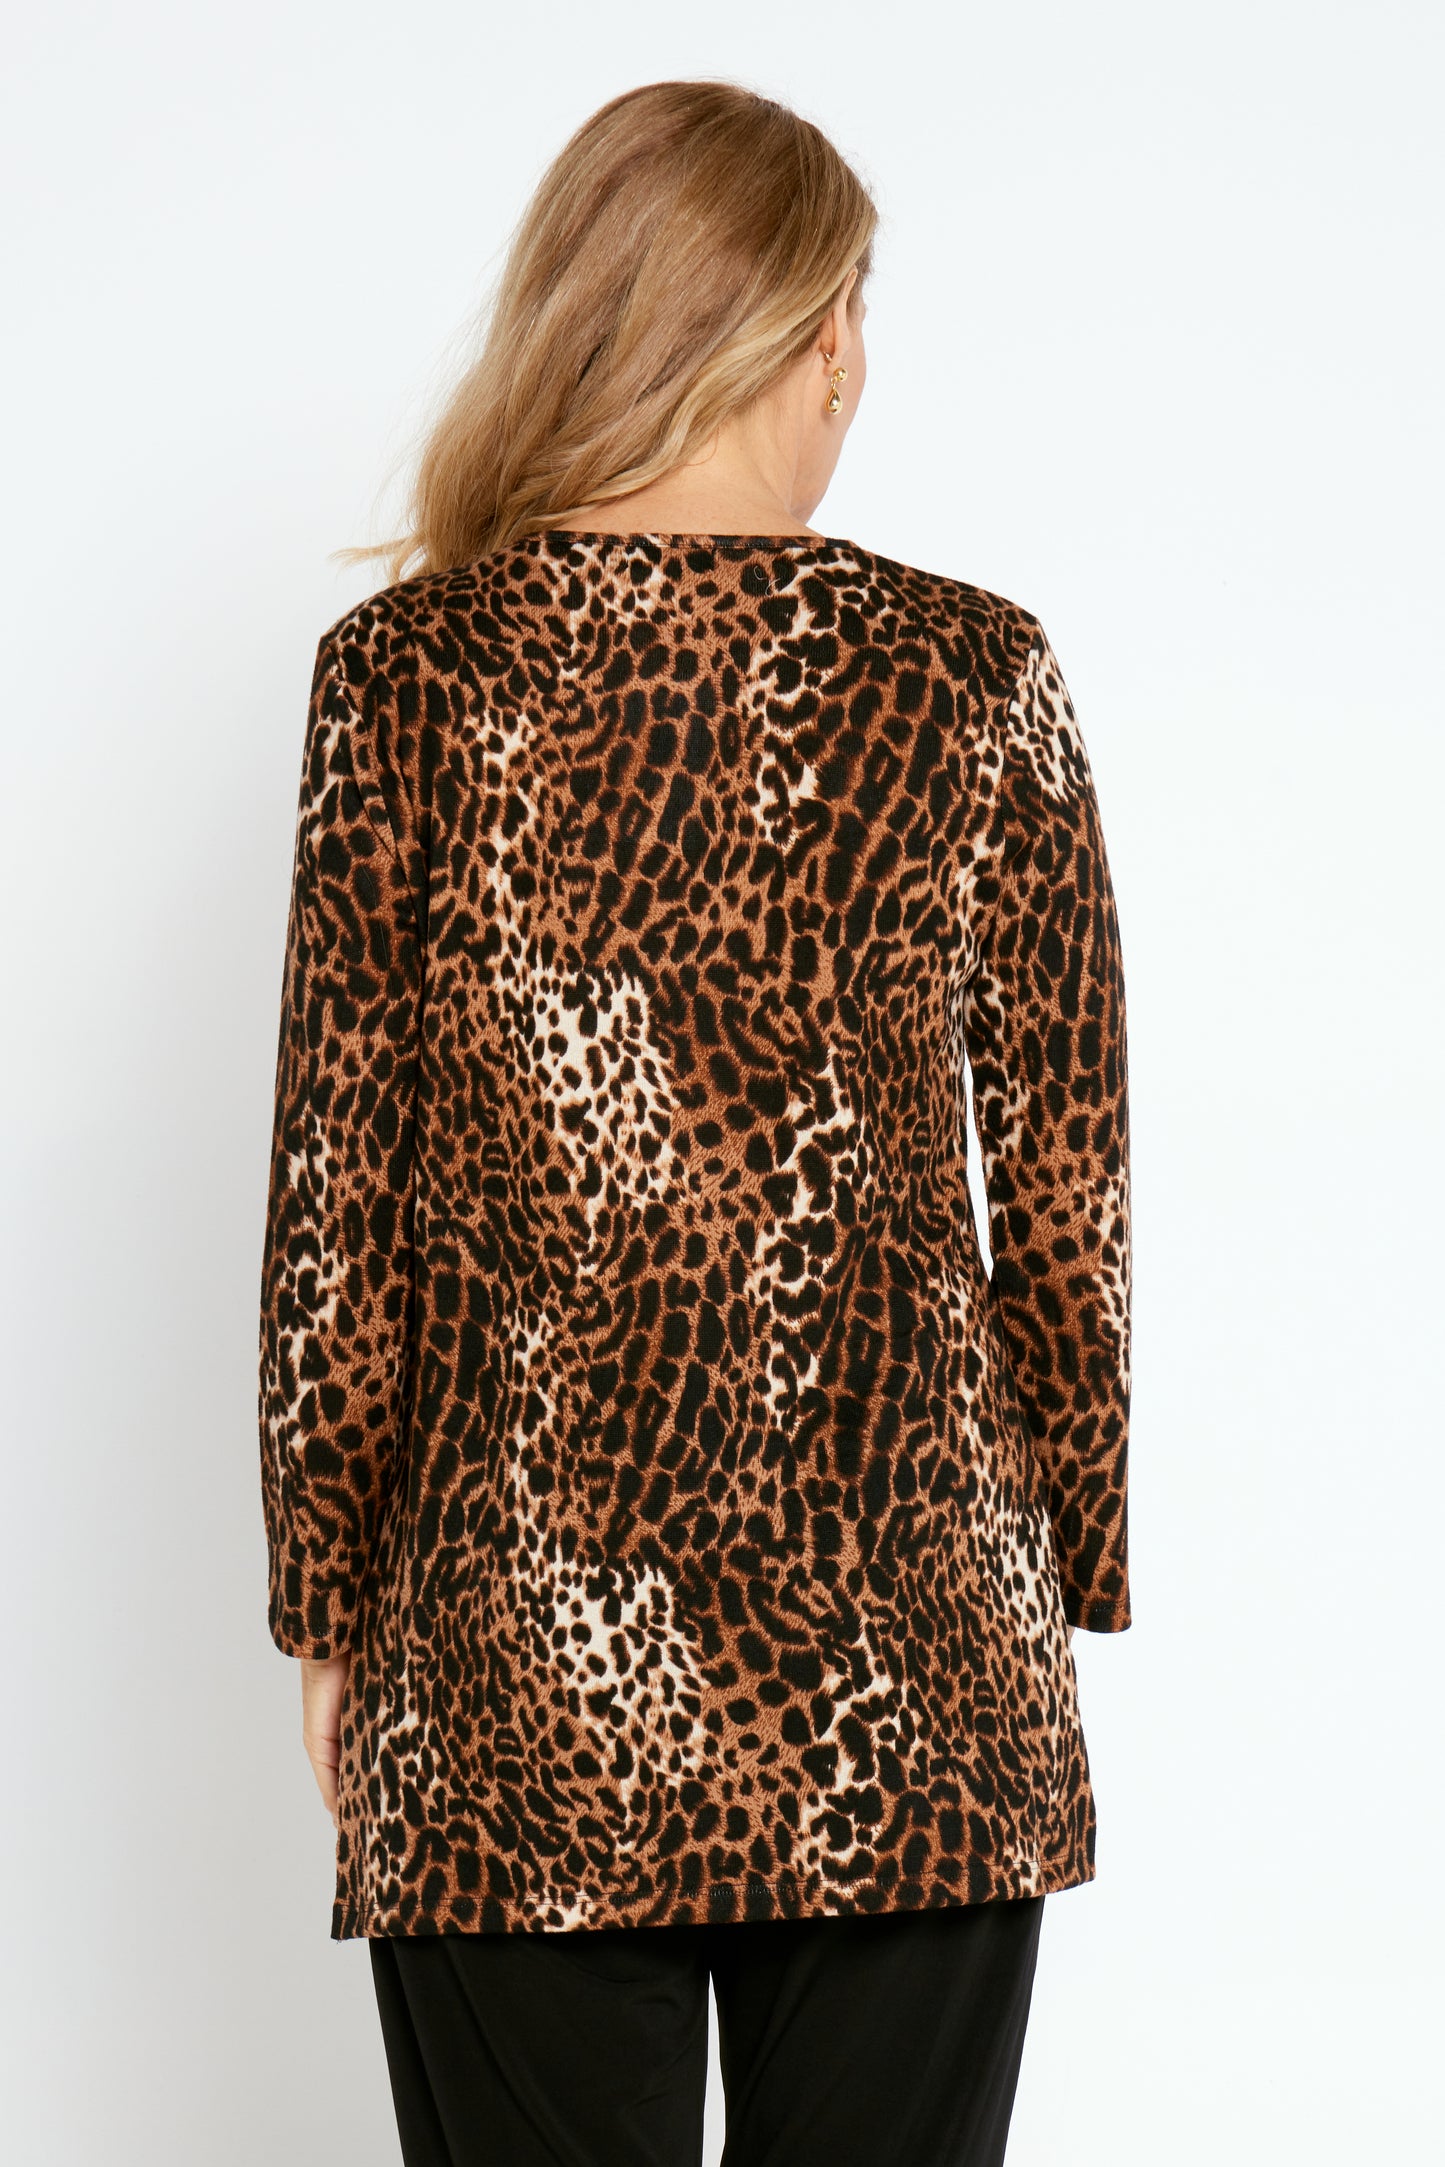 Zarah Knit Top - Leopard